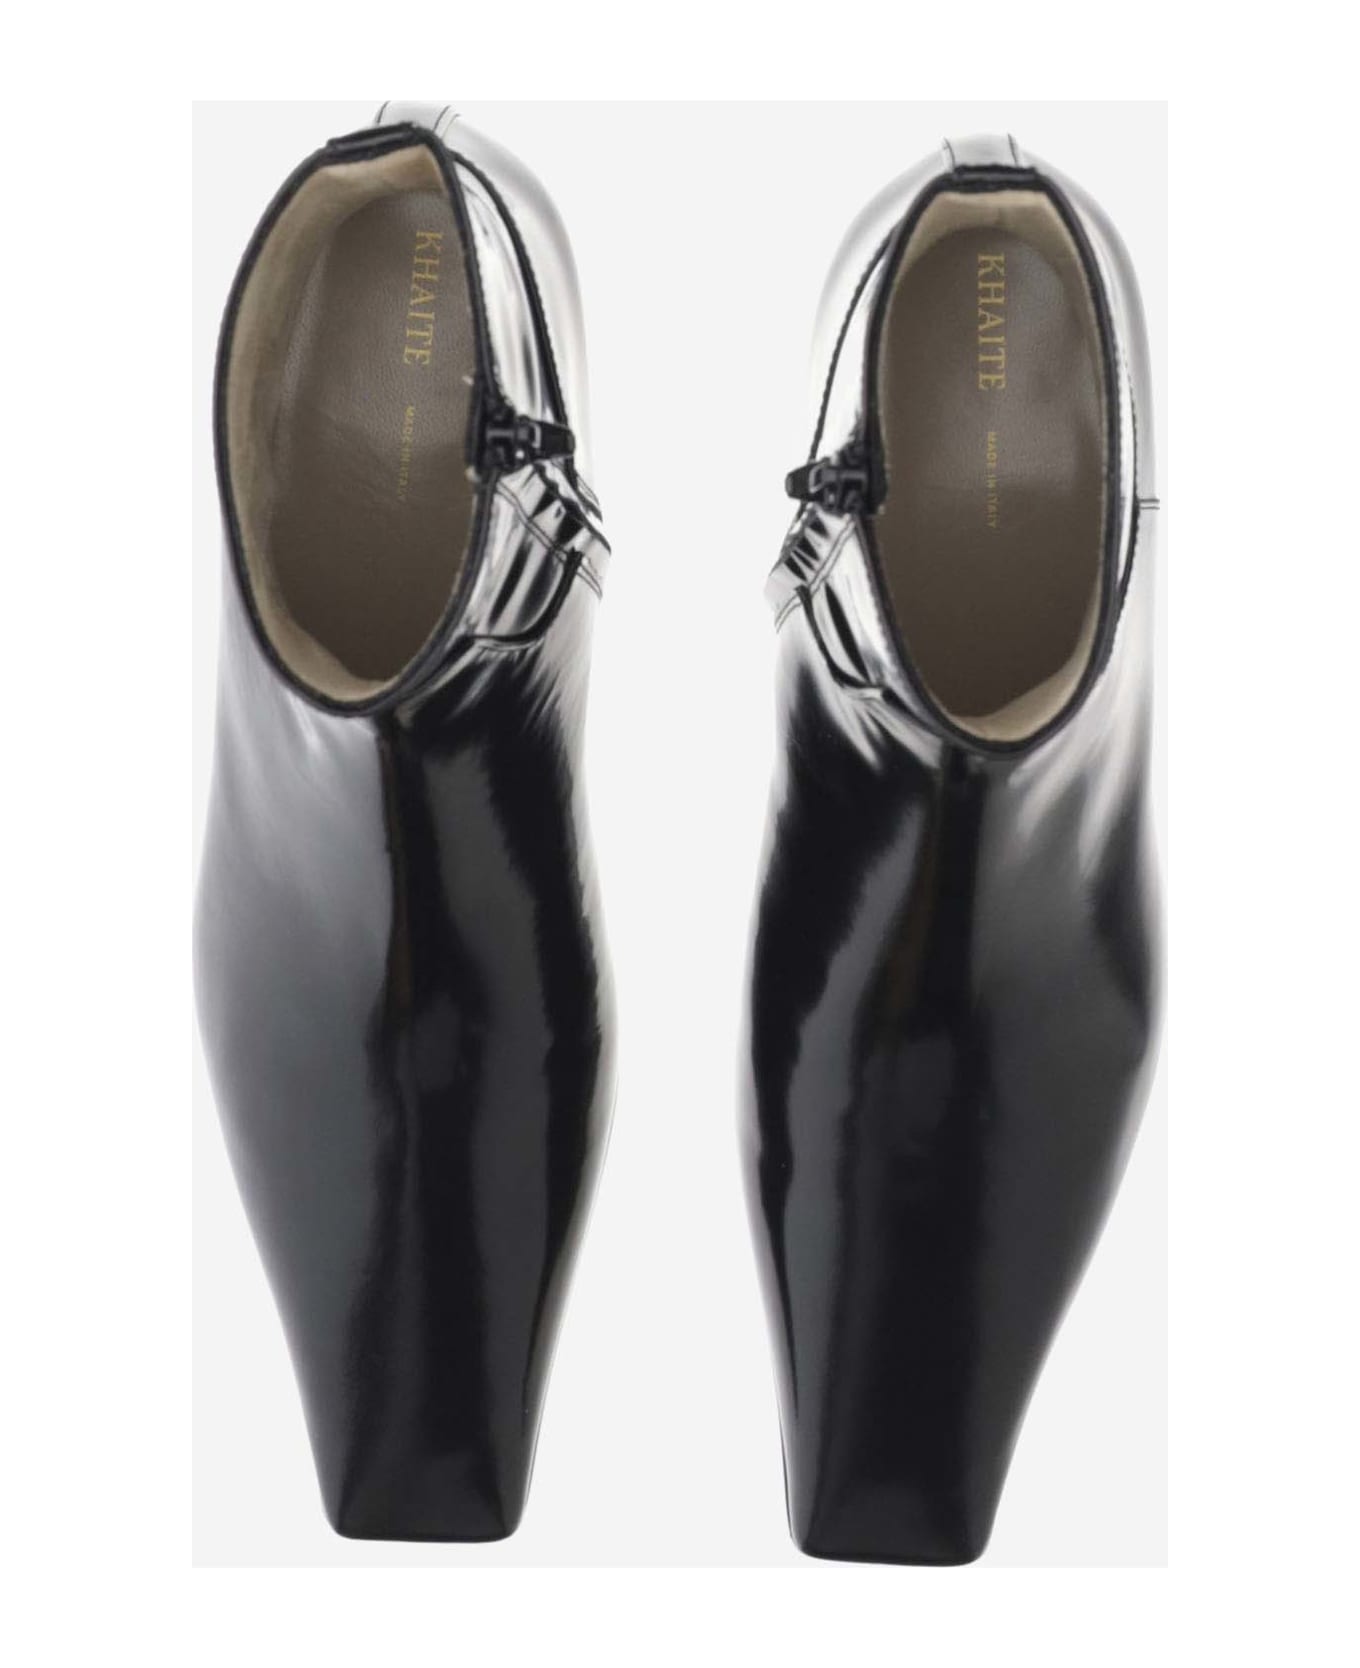 Khaite Patent Leather Ankle Boots - Black